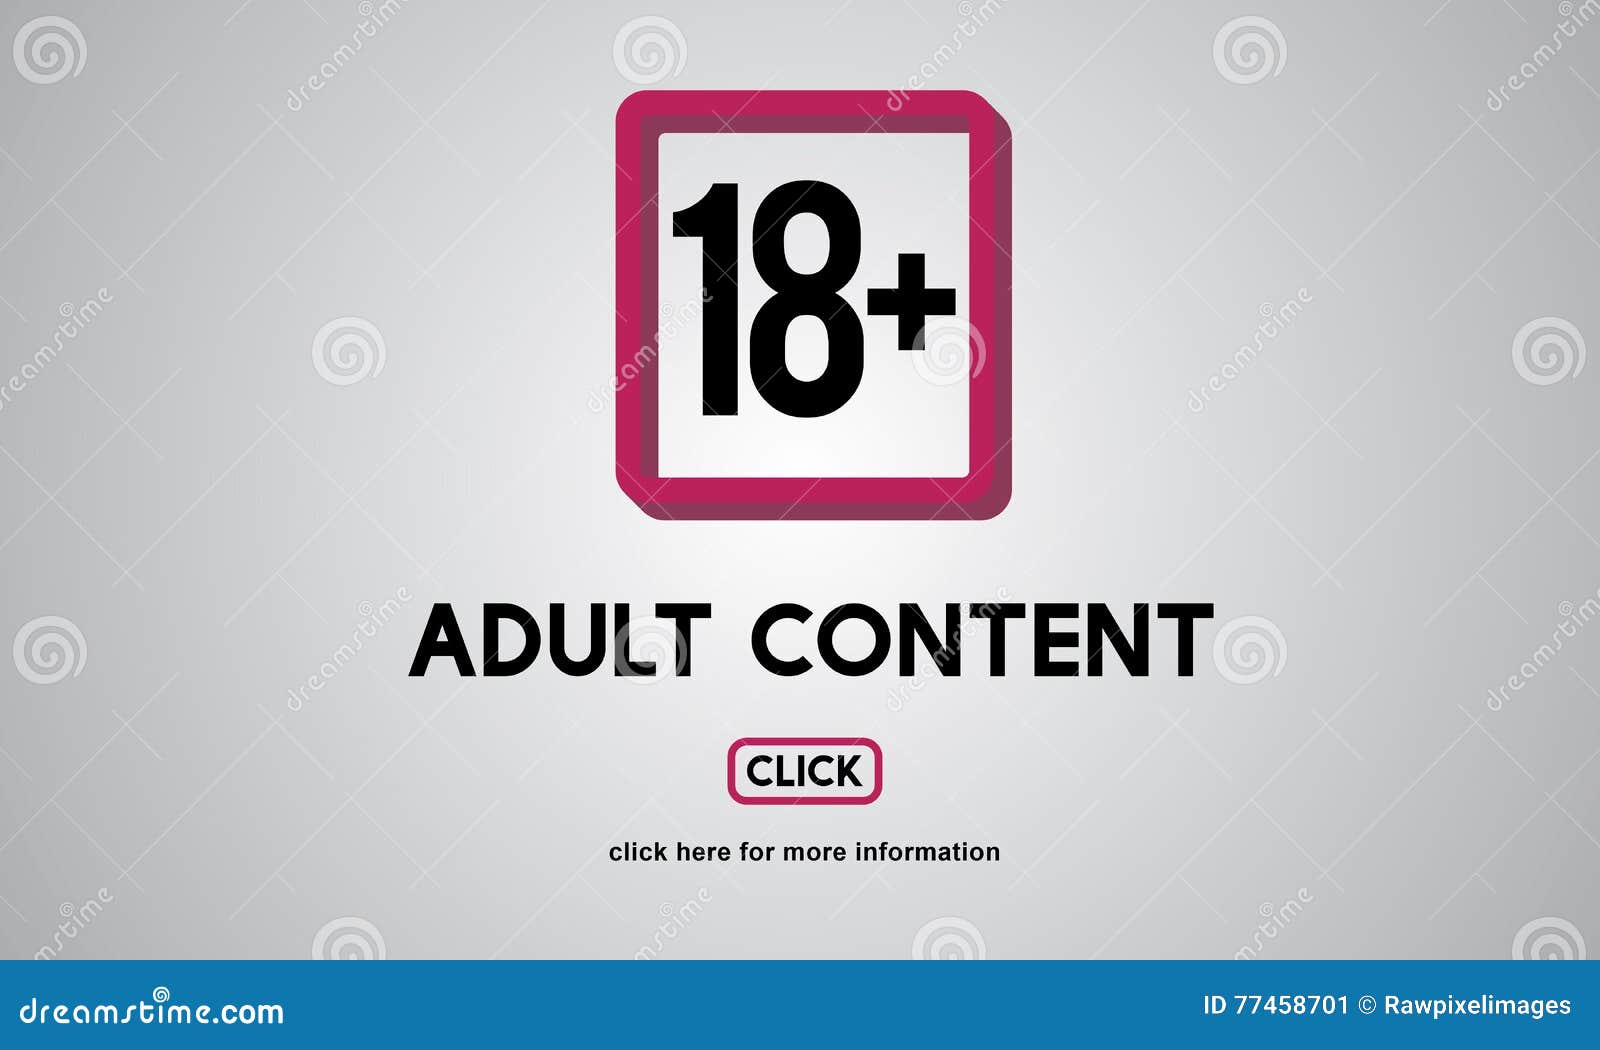 eighteen plus adult explicit content warning